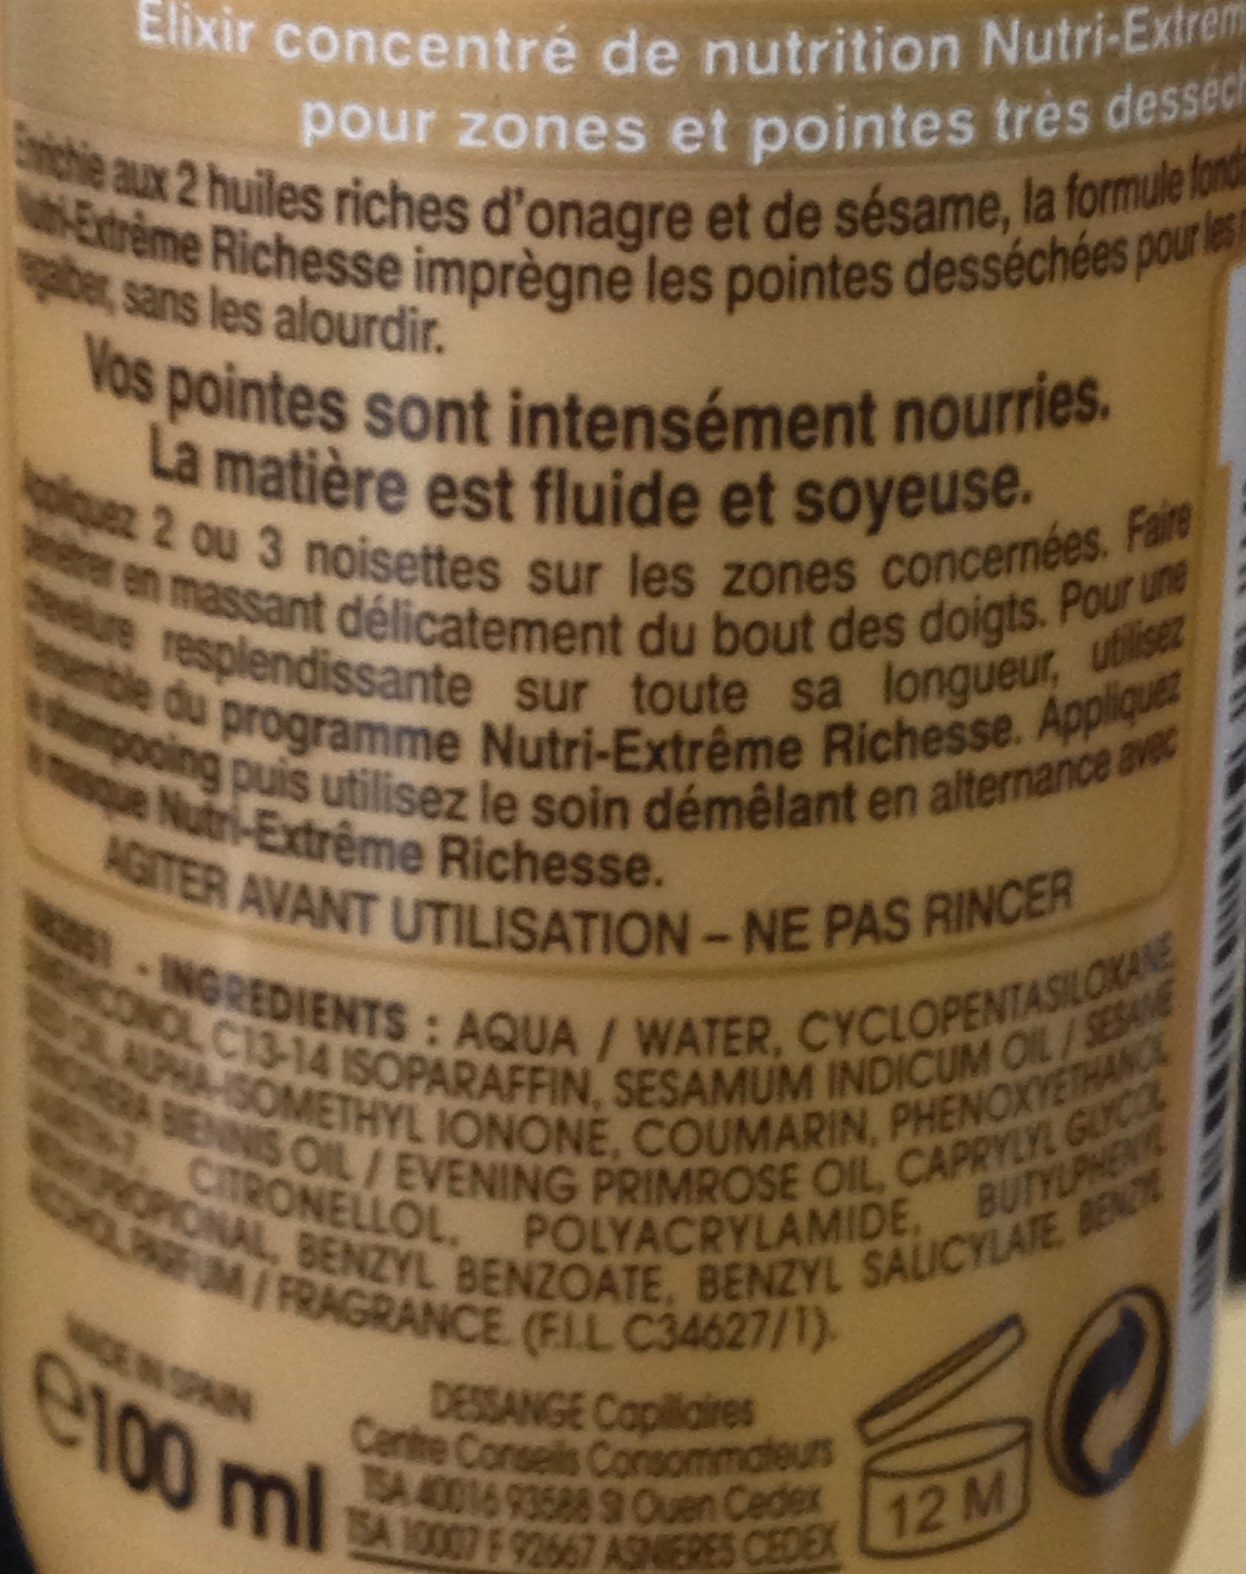 Elixir concentré de nutrition sans rinçage, aux 2 huiles riches d'onagre et de sésame, pointes et zones très desséchées - Inhaltsstoffe - fr